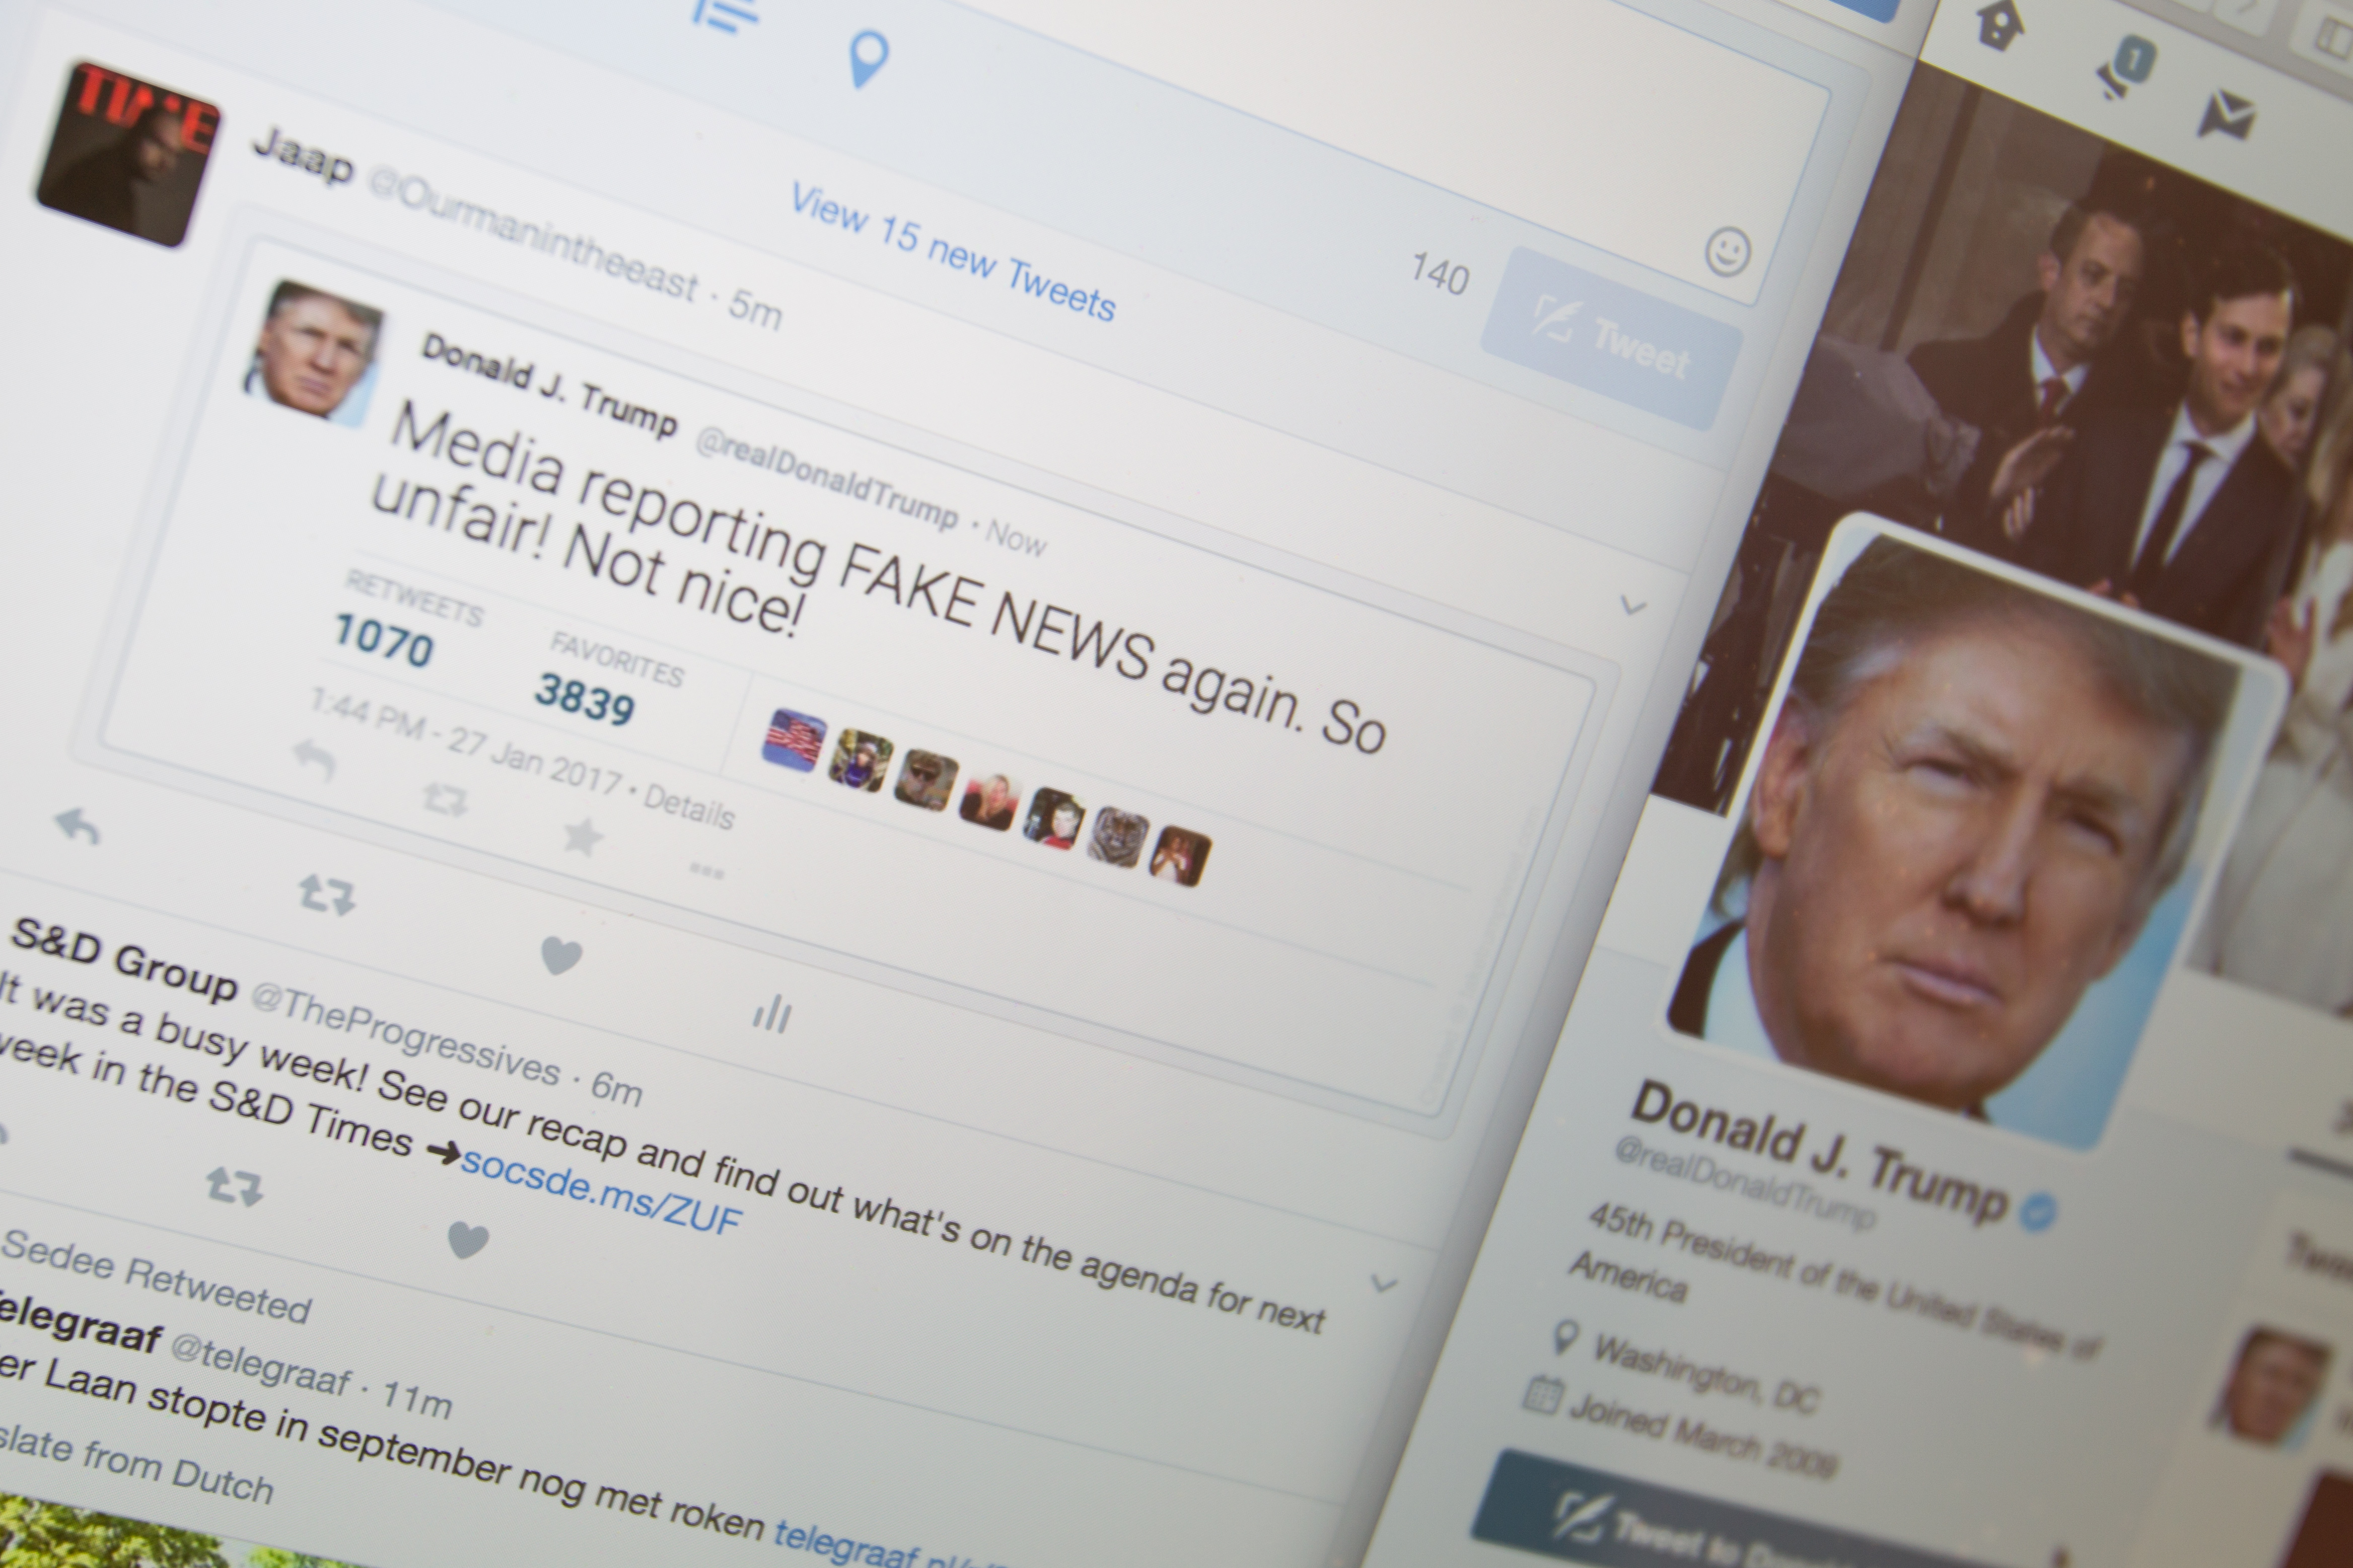 Fake Donald Trump tweets from China